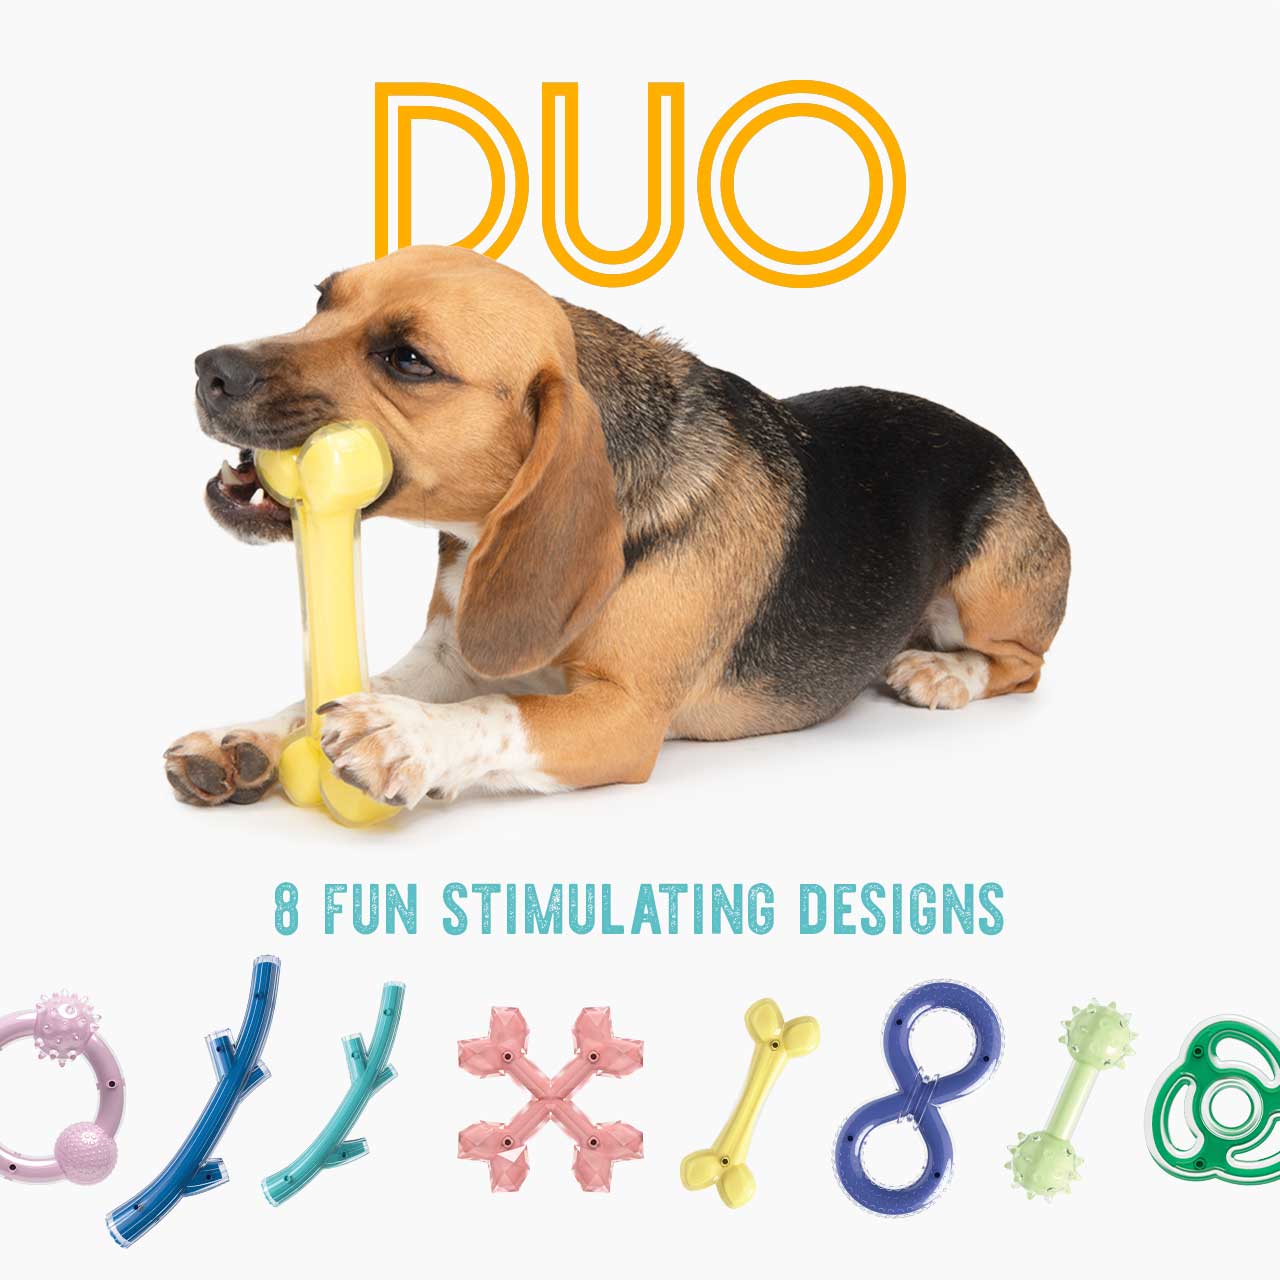 Zeus Duo - 8 fun stimulating designs, read more